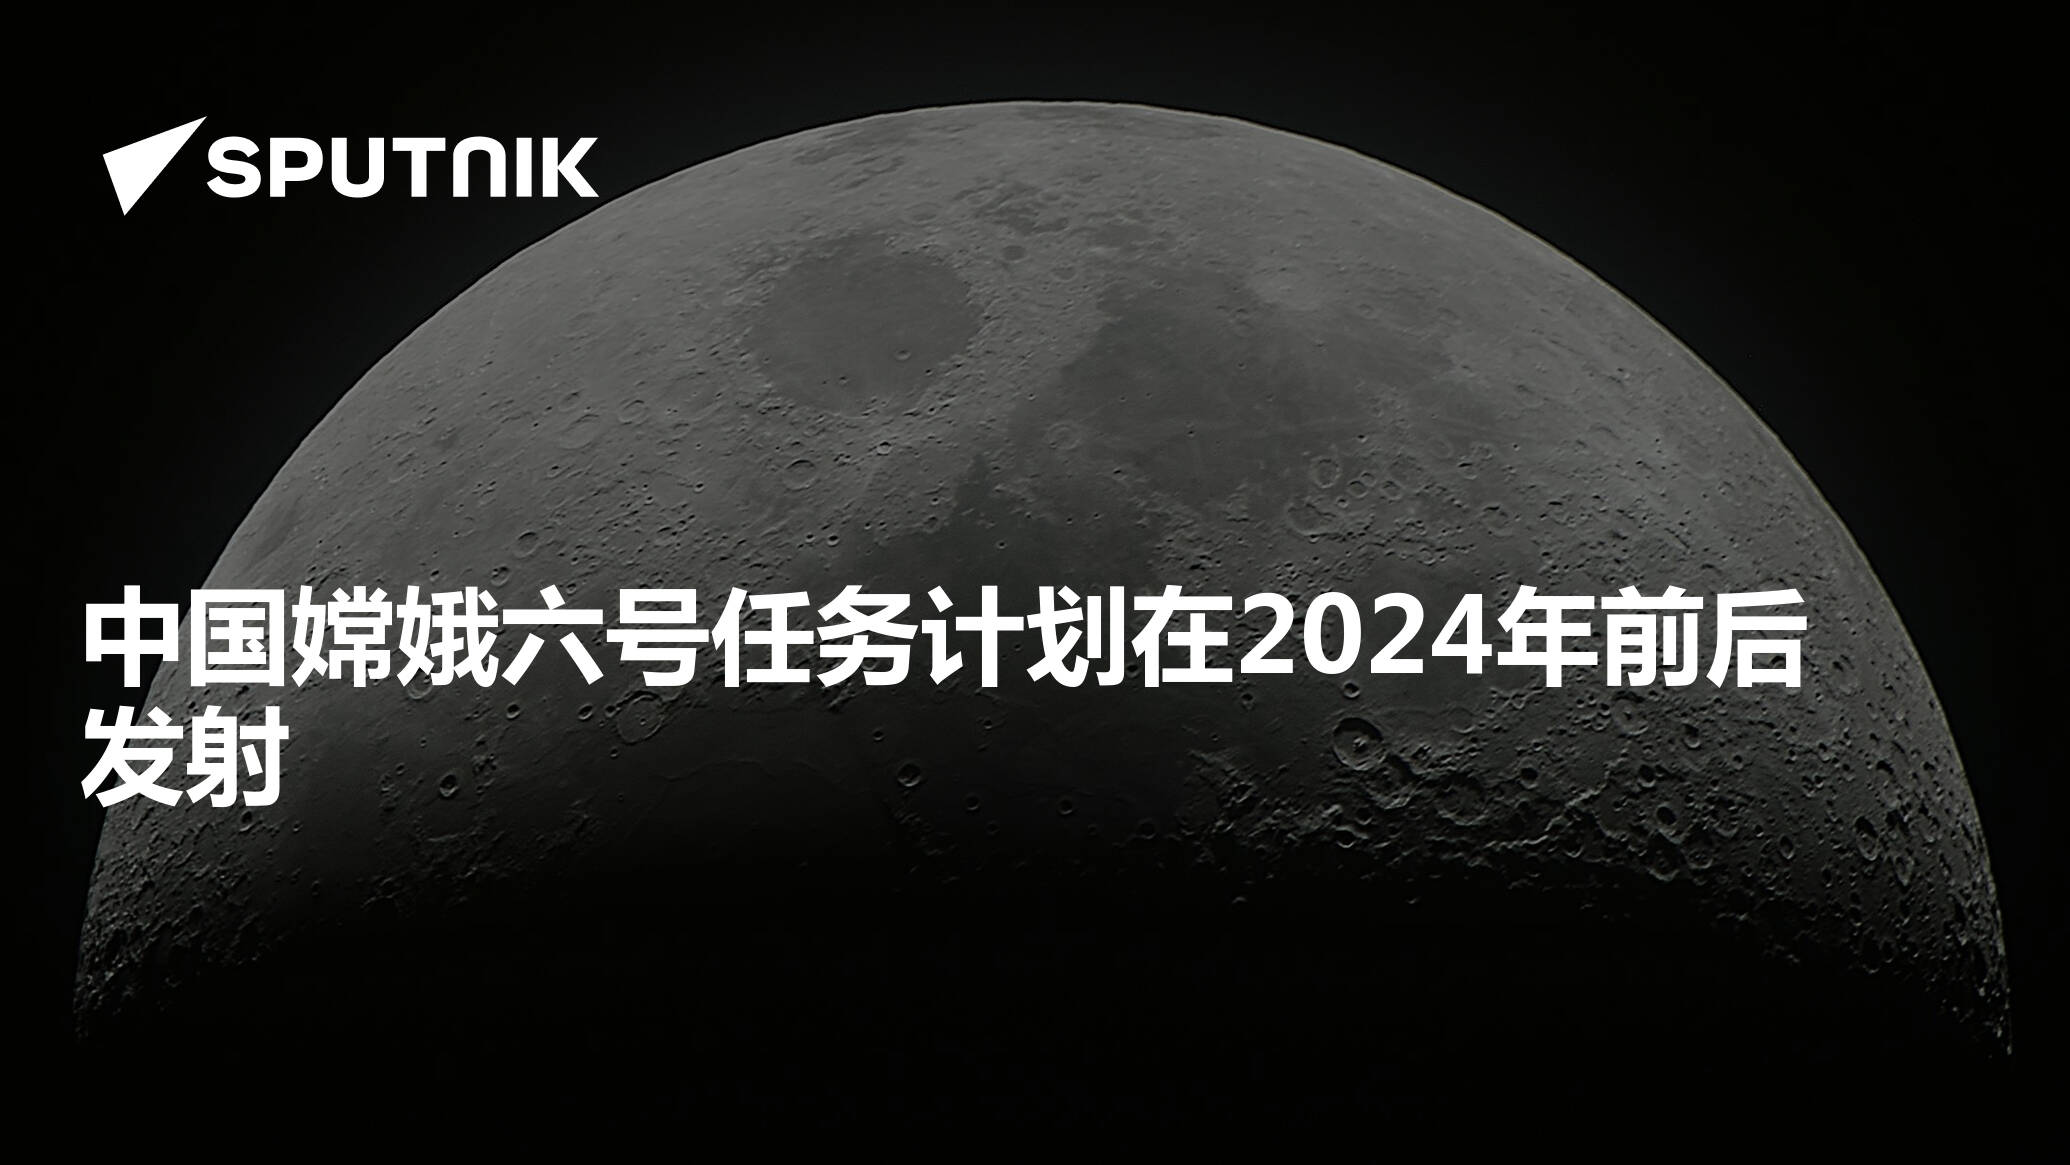 中國深空探測「六戰六捷」 嫦娥六號明年5月實現月背採樣